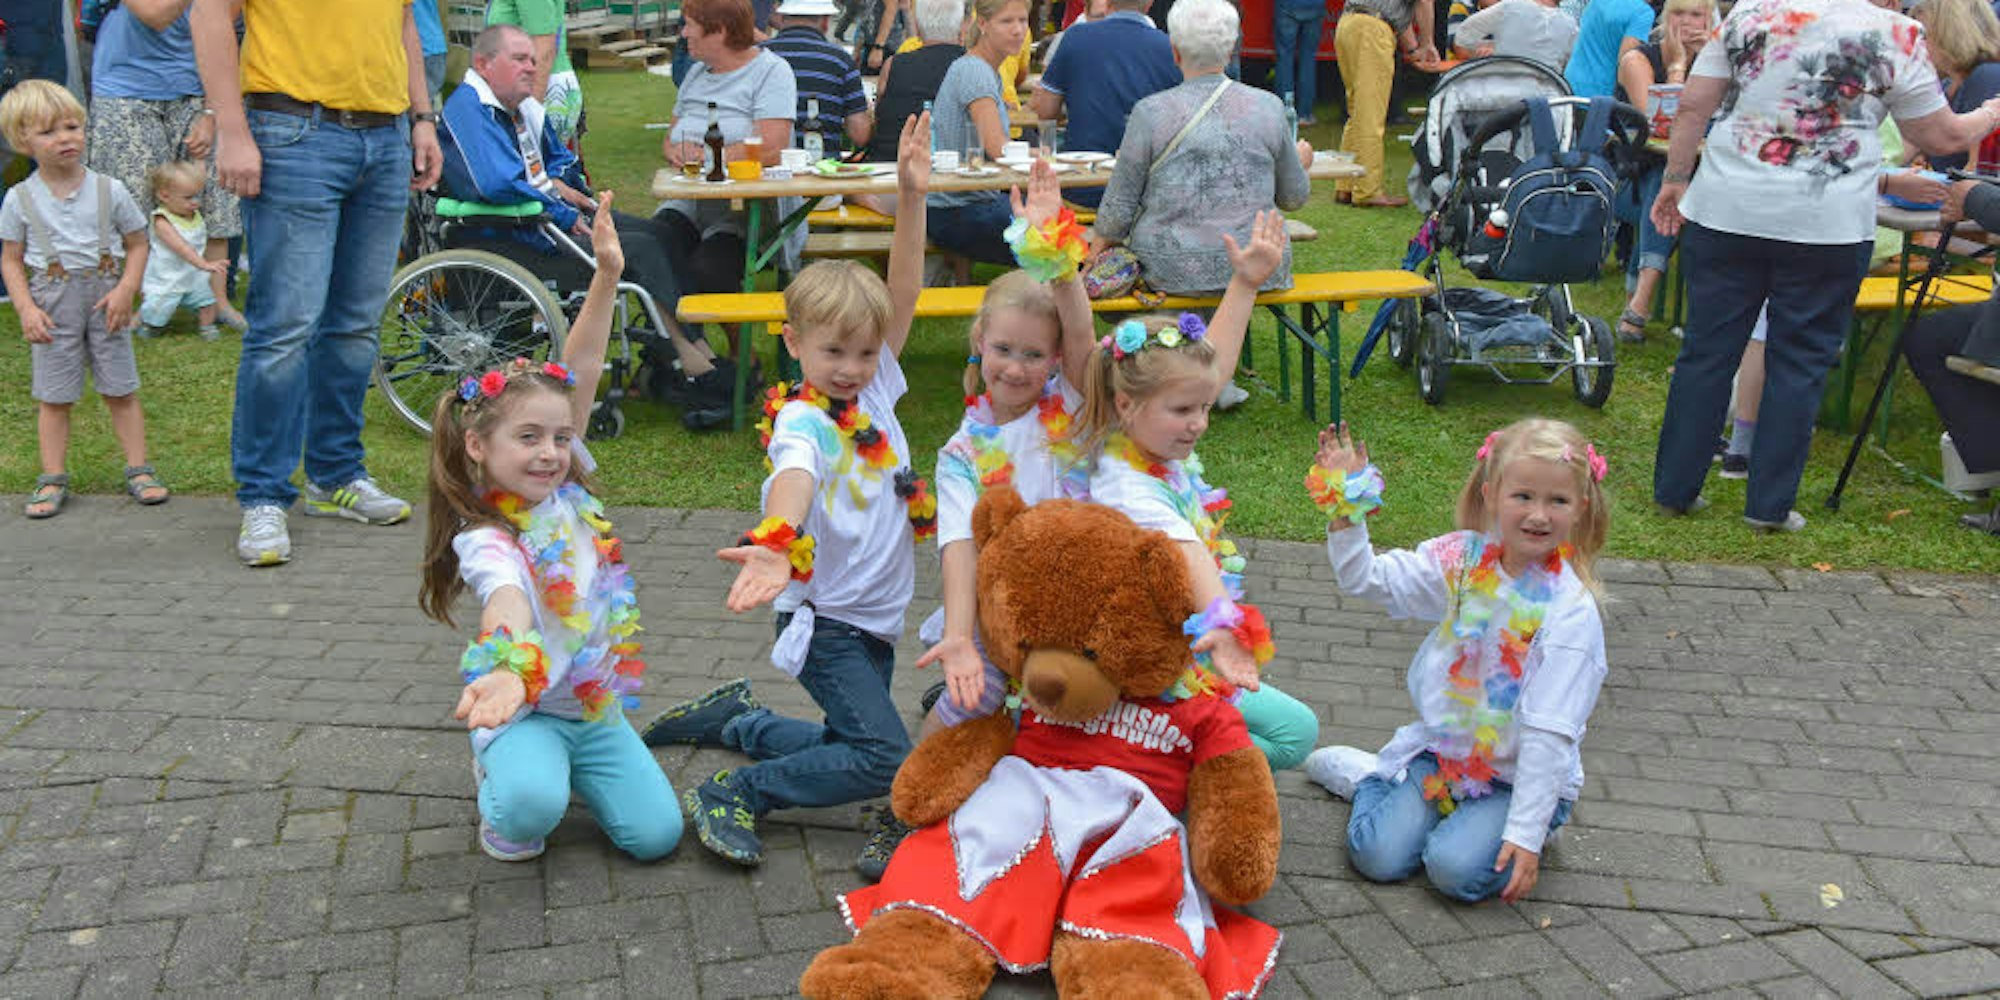 Auch die Minis aus der Tanzgruppe des Sportvereins Frielingsdorf zeigten ihr Können. Beobachter im gelben T-Shirt ist Marcel Fischer vom Bürgerverein. Das Fest am Wochenende war gut besucht, freuen sich die Veranstalter.